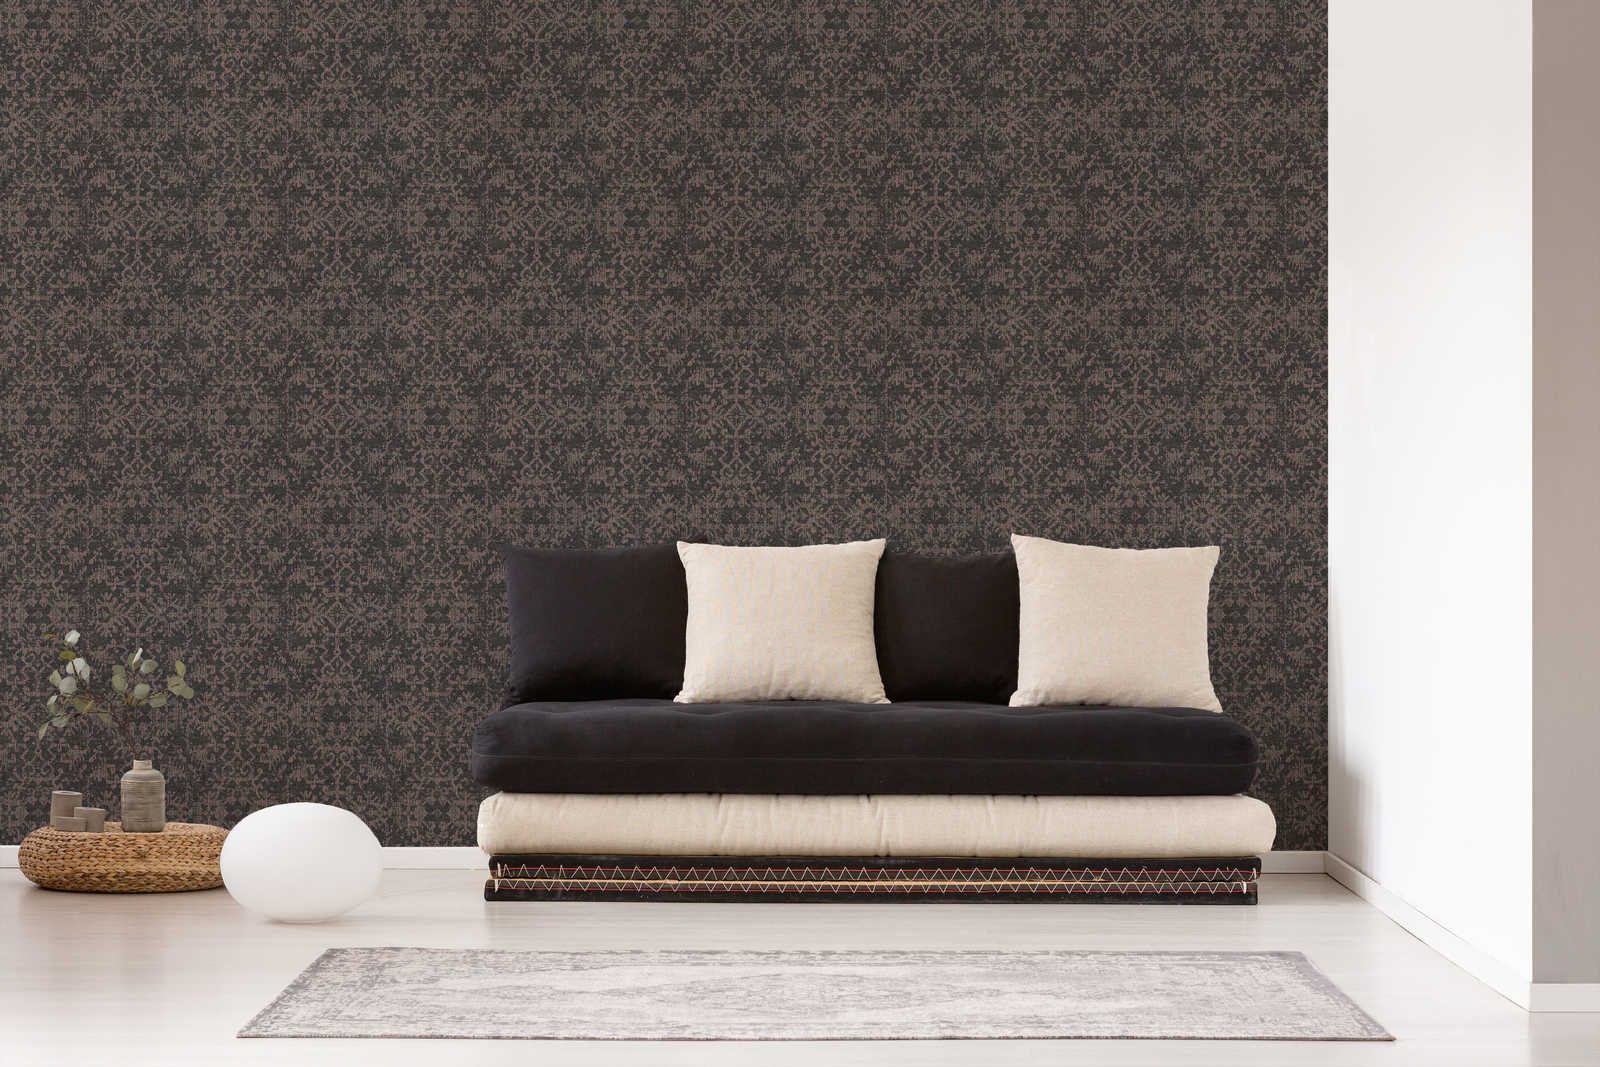             Zwart behang met textiellook en tapijtdesign
        